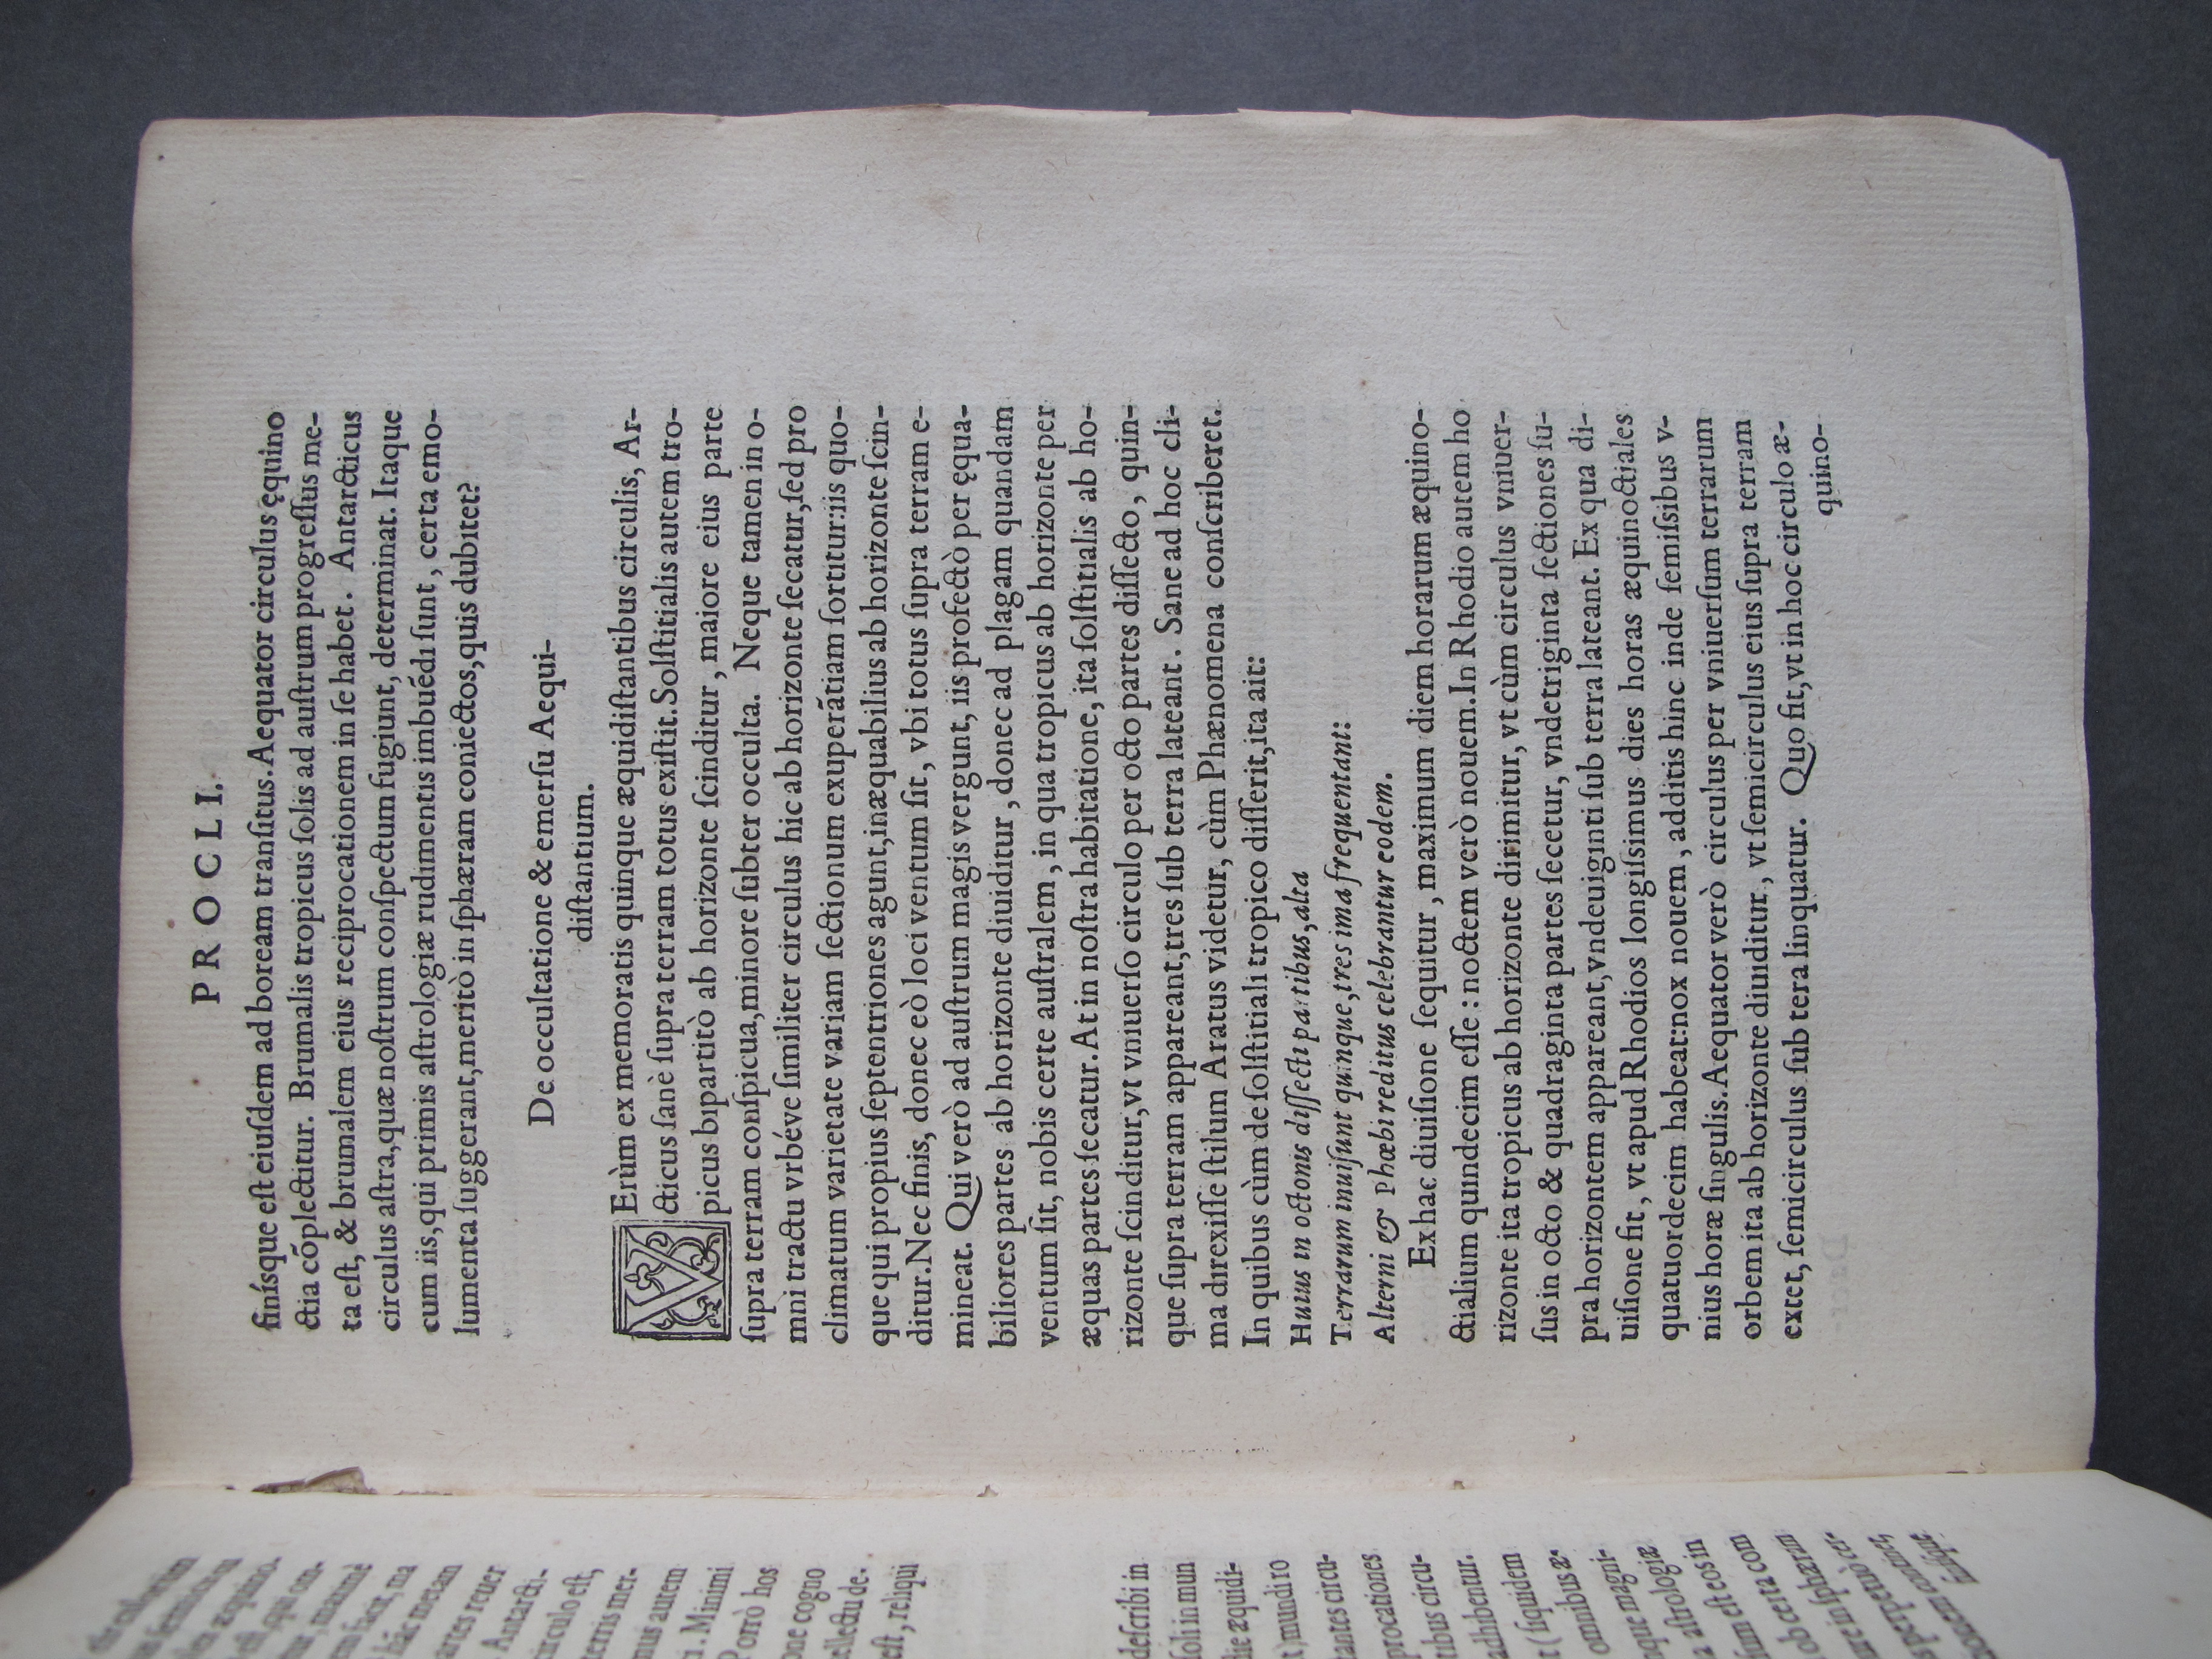 Folio A3 recto